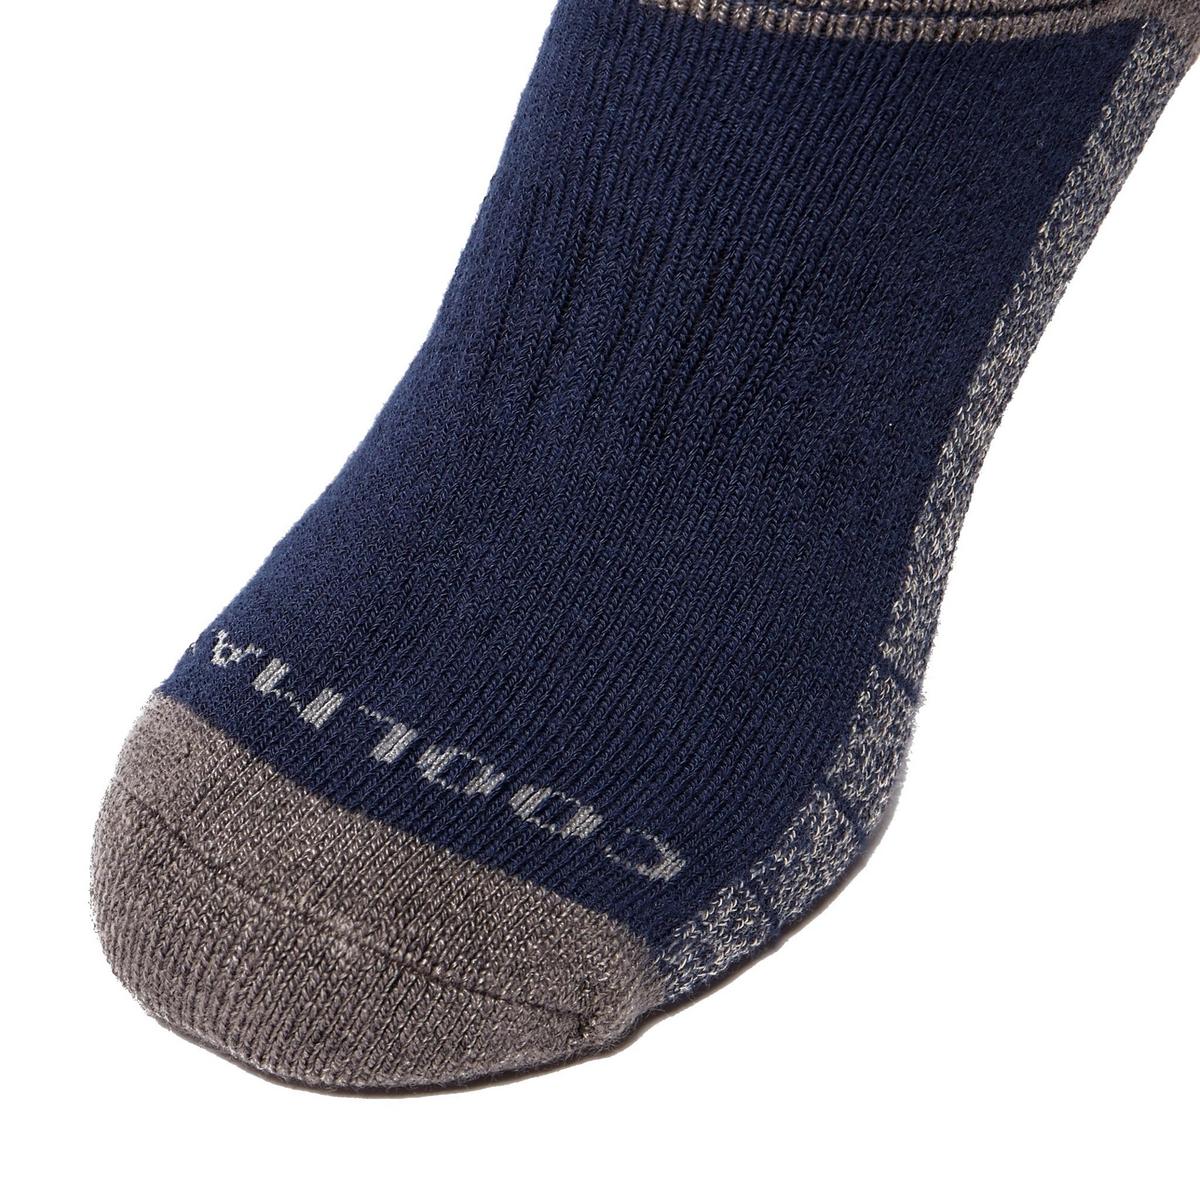 Peter Storm Men's Midweight Outdoor Socks 2 Pack - Navy